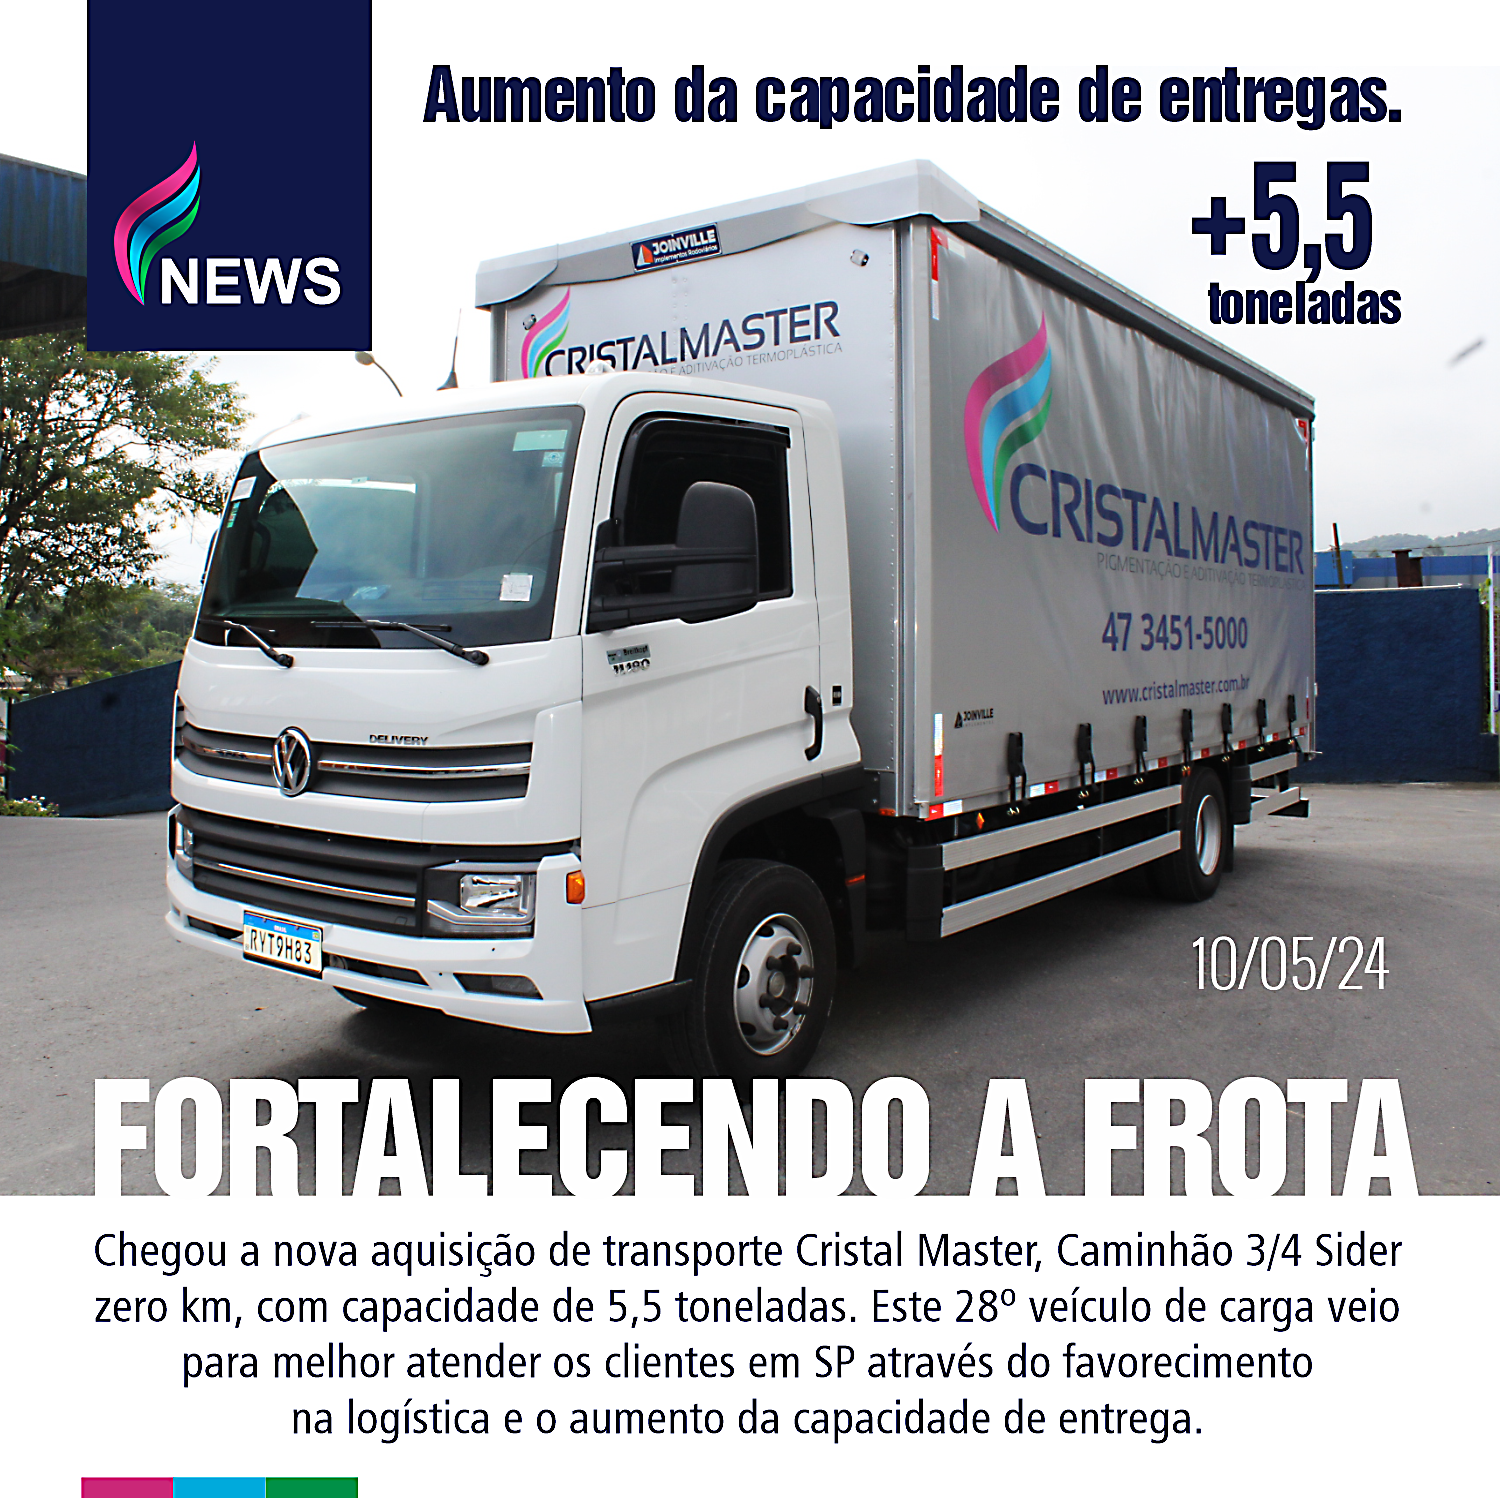 NEWS - Fortalecendo a Frota - publicado em 10/05/24